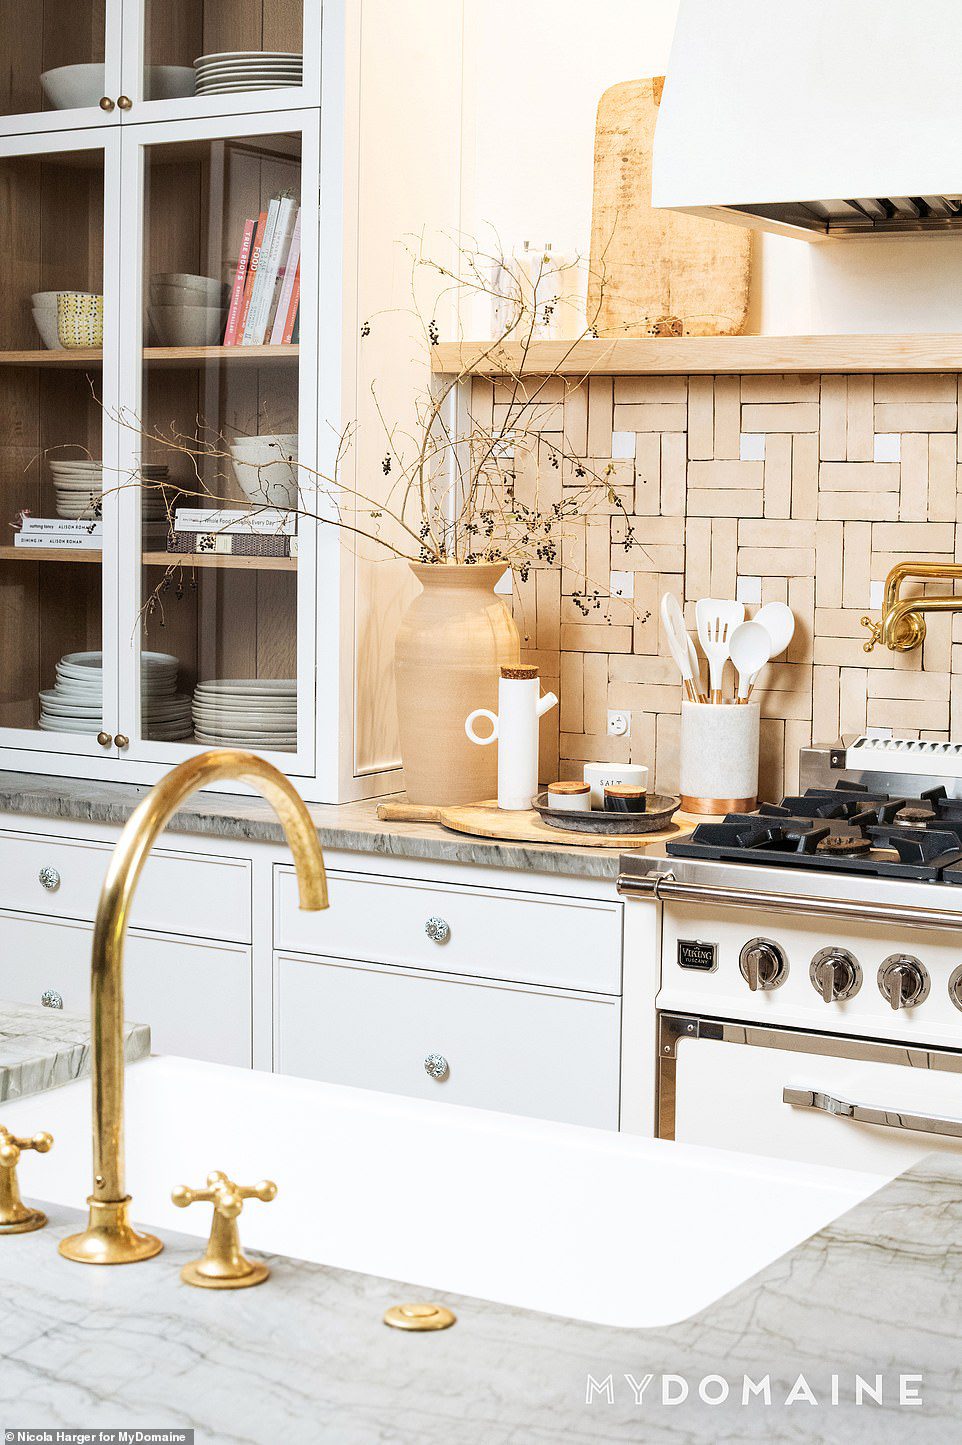 Küche: Ihre atemberaubende Küche ist komplett mit goldenen Hardware-Akzenten, handgekachelten Mosaikrückwänden, Marmorarbeitsplatten und Schränken mit Glastüren, die das Auffinden von Geschirr und Kochgeschirr erleichtern.